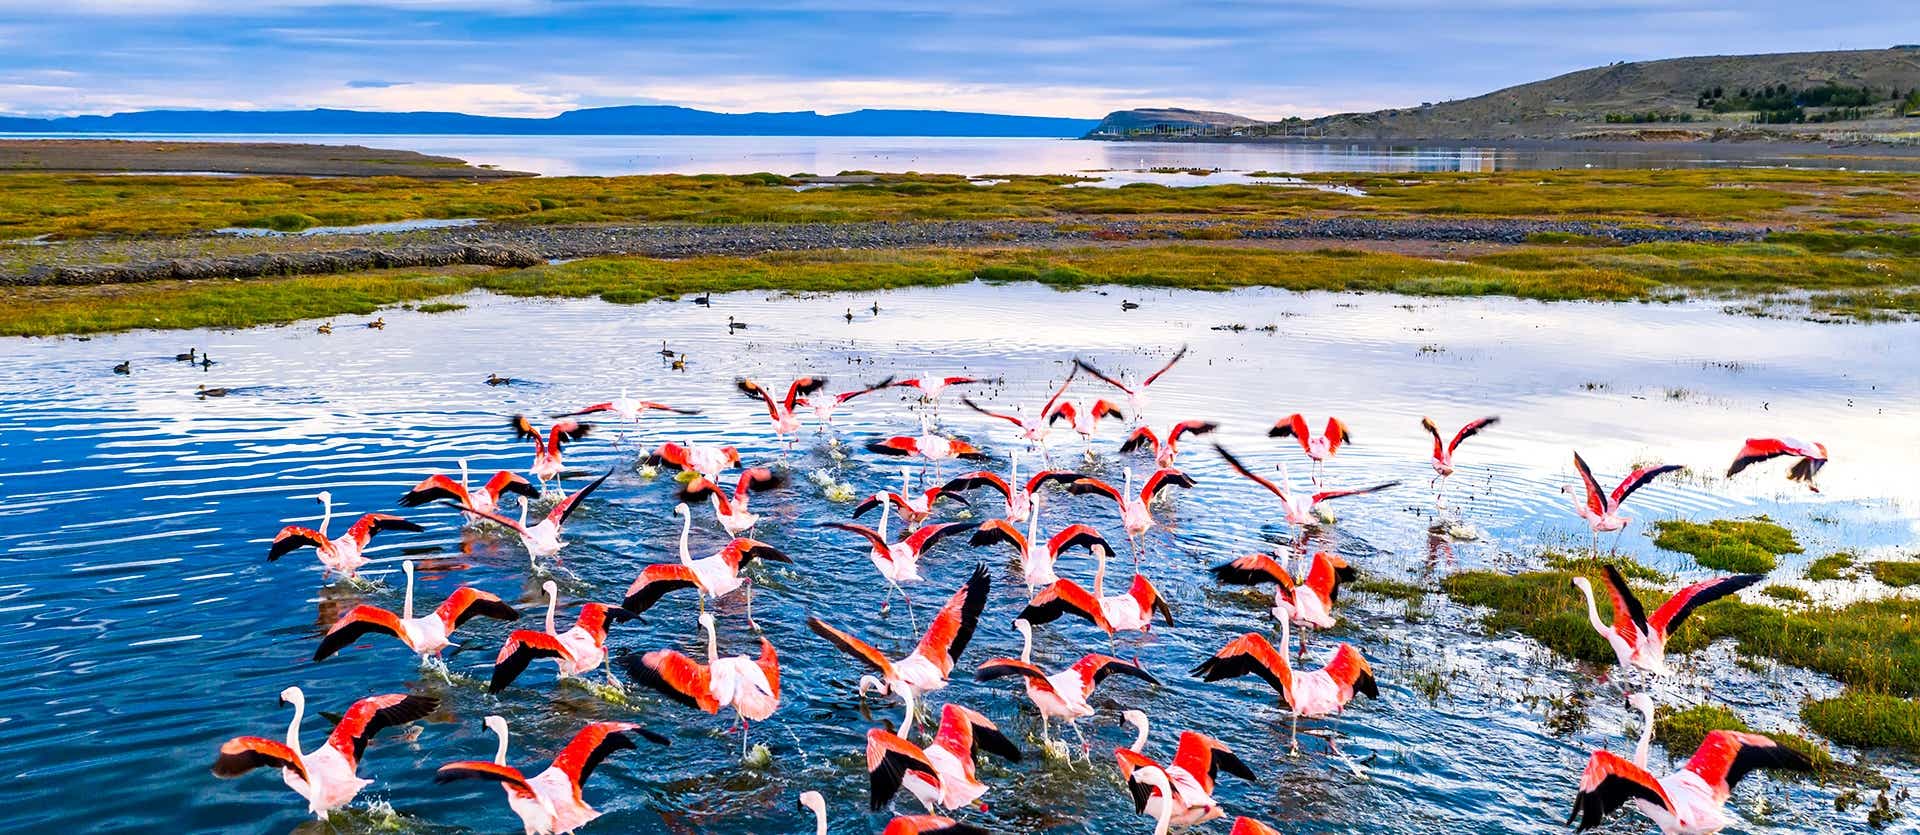 Flamingos <span class="iconos separador"></span> El Calafate <span class="iconos separador"></span> Patagonia